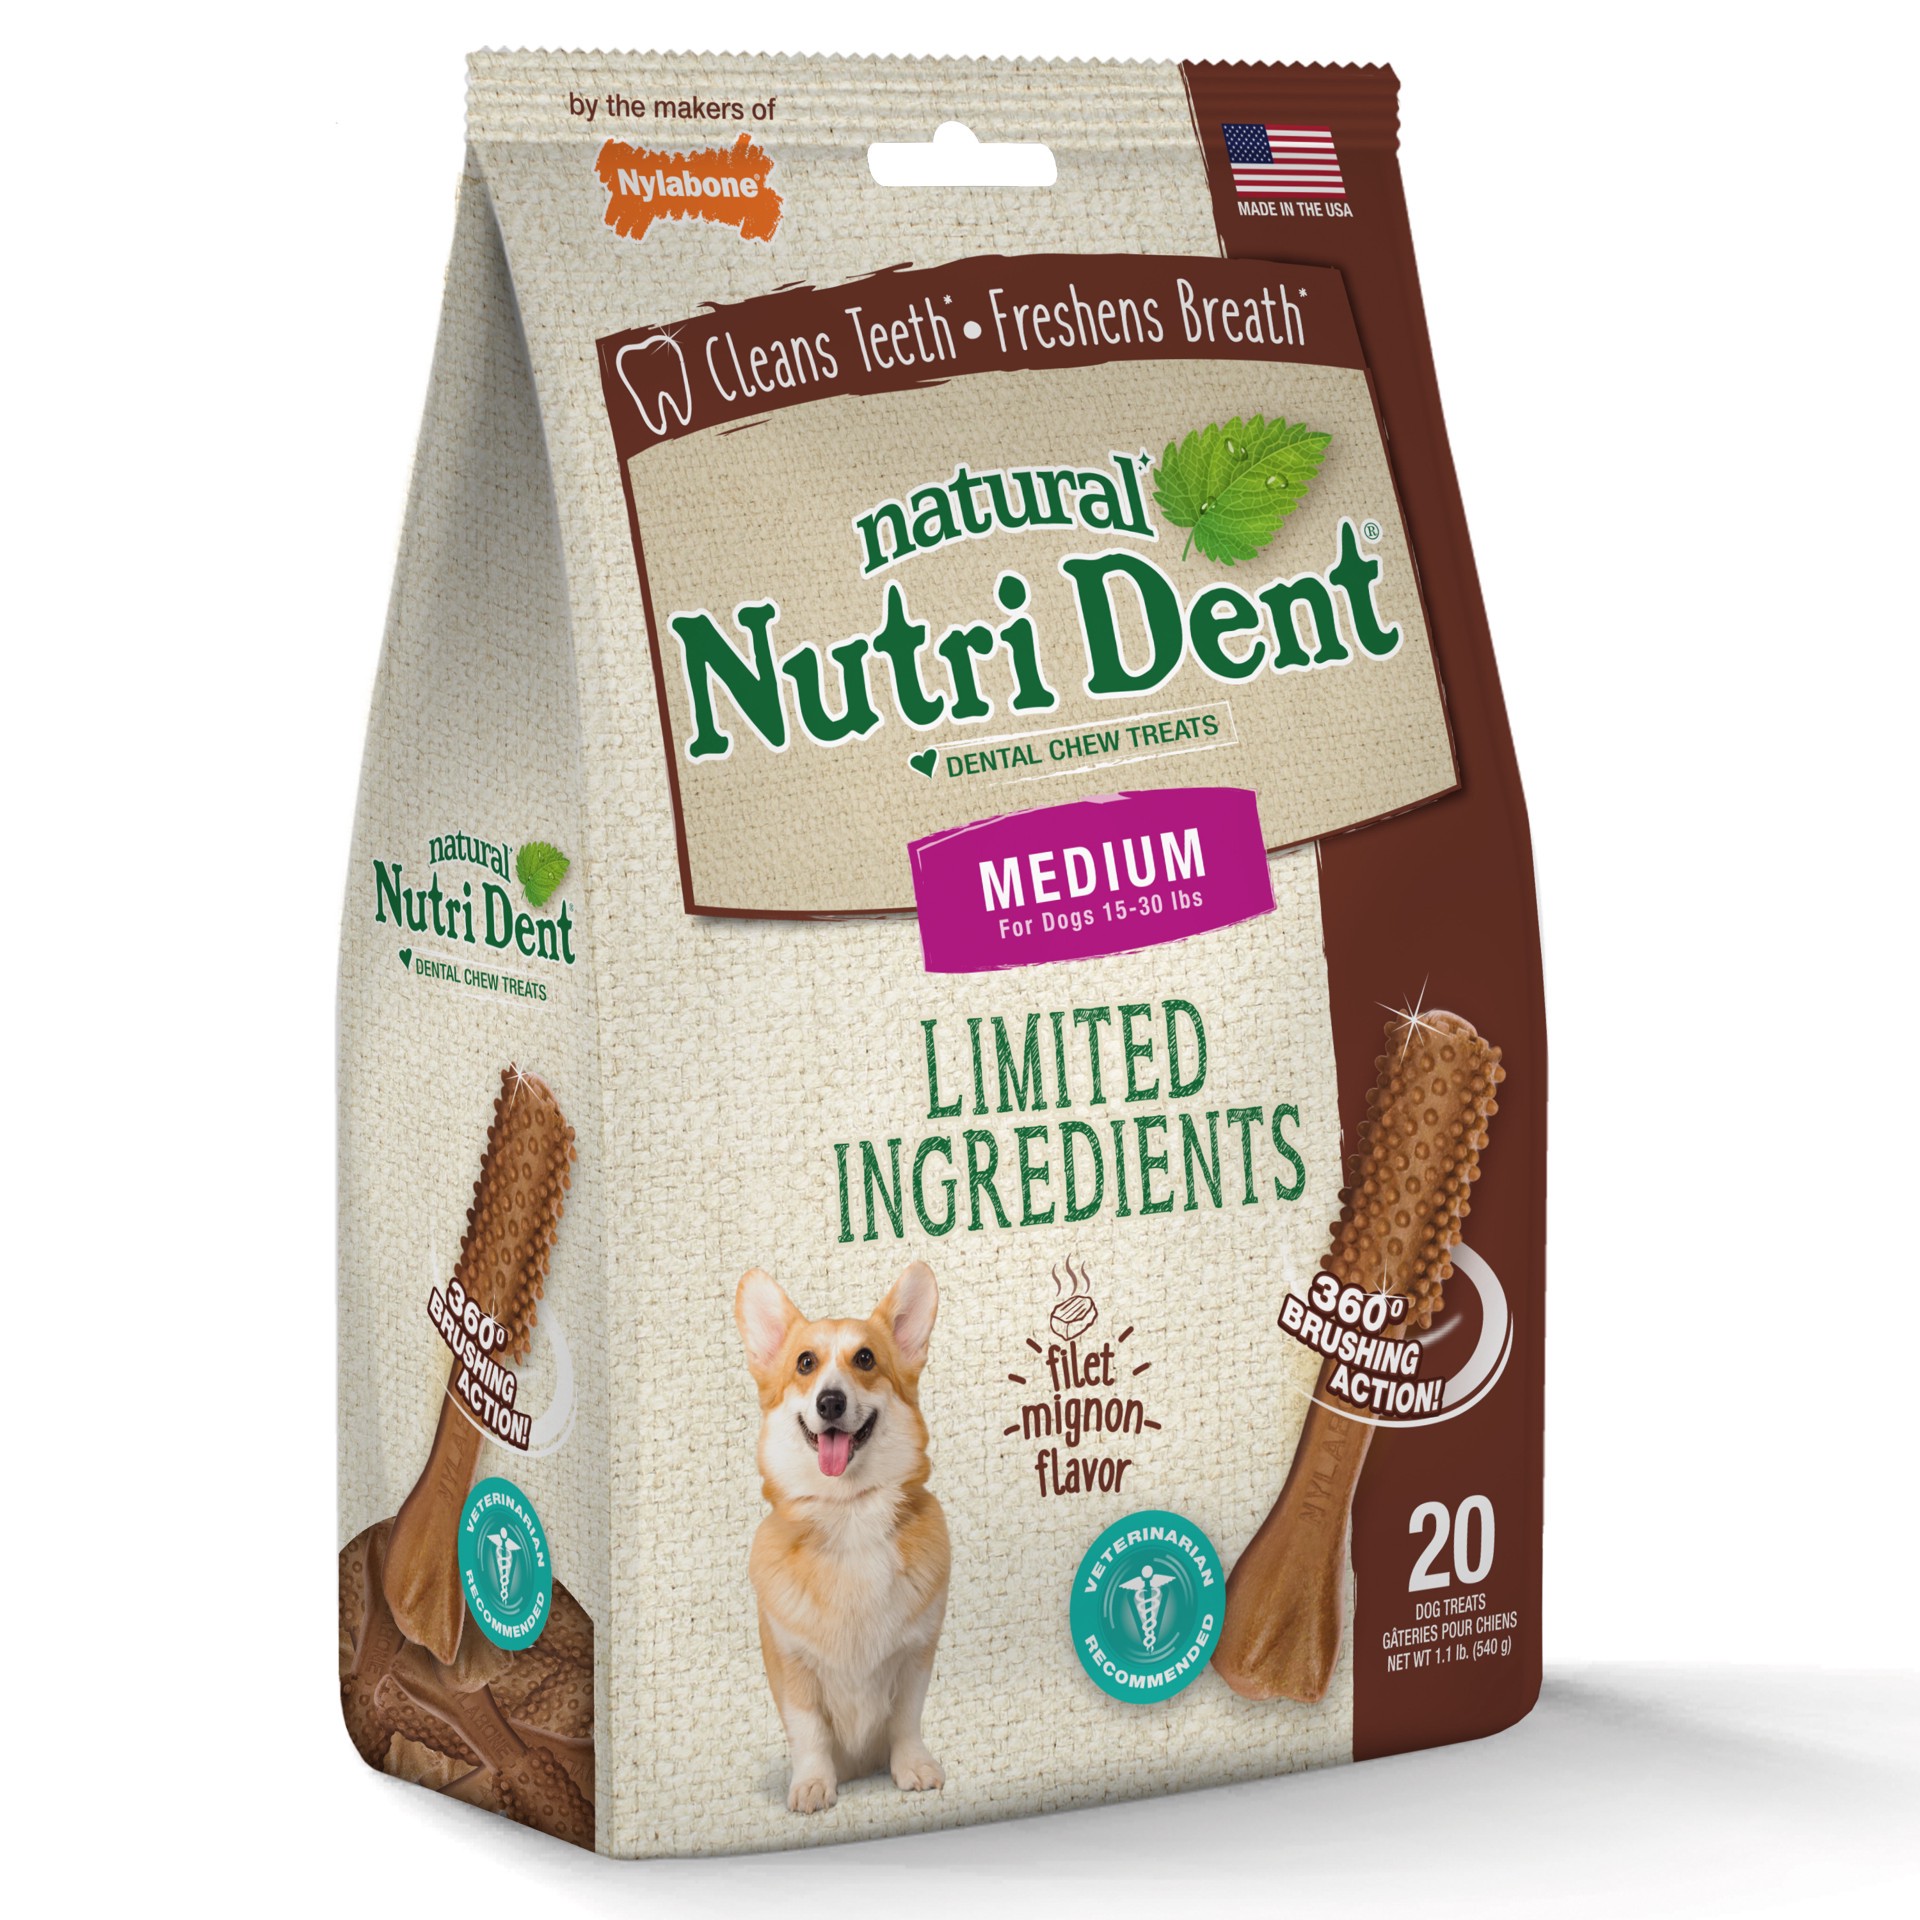 slide 6 of 10, Nylabone Nutri-Dent Filet Mignon Flavor Medium Dental Dog Treats, 20 ct